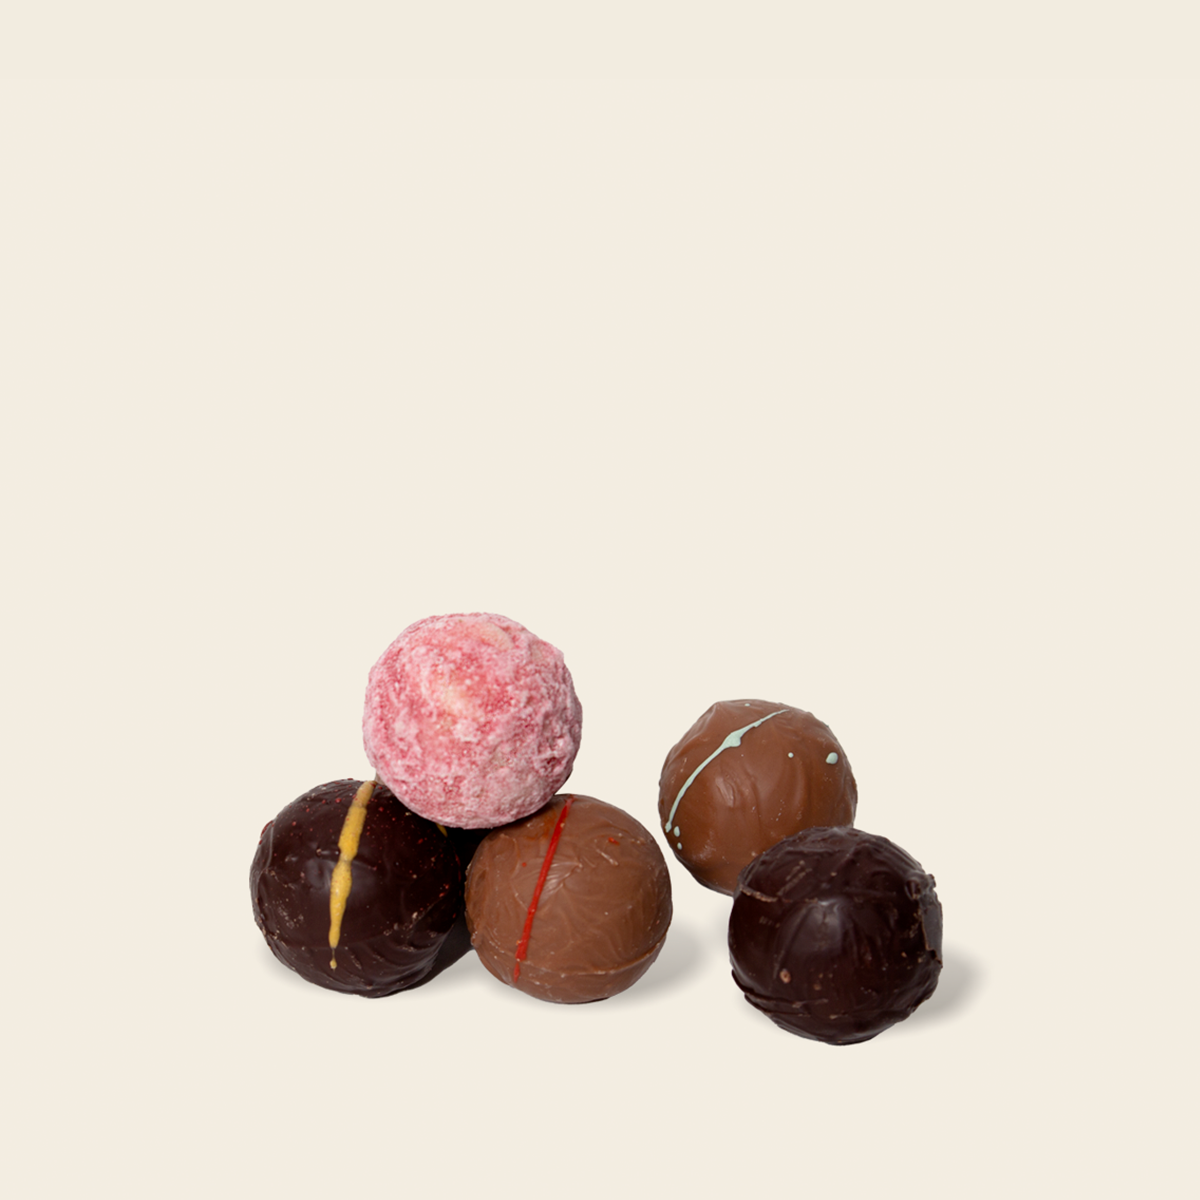 Praline & Ganache Box • 18 Chocolates